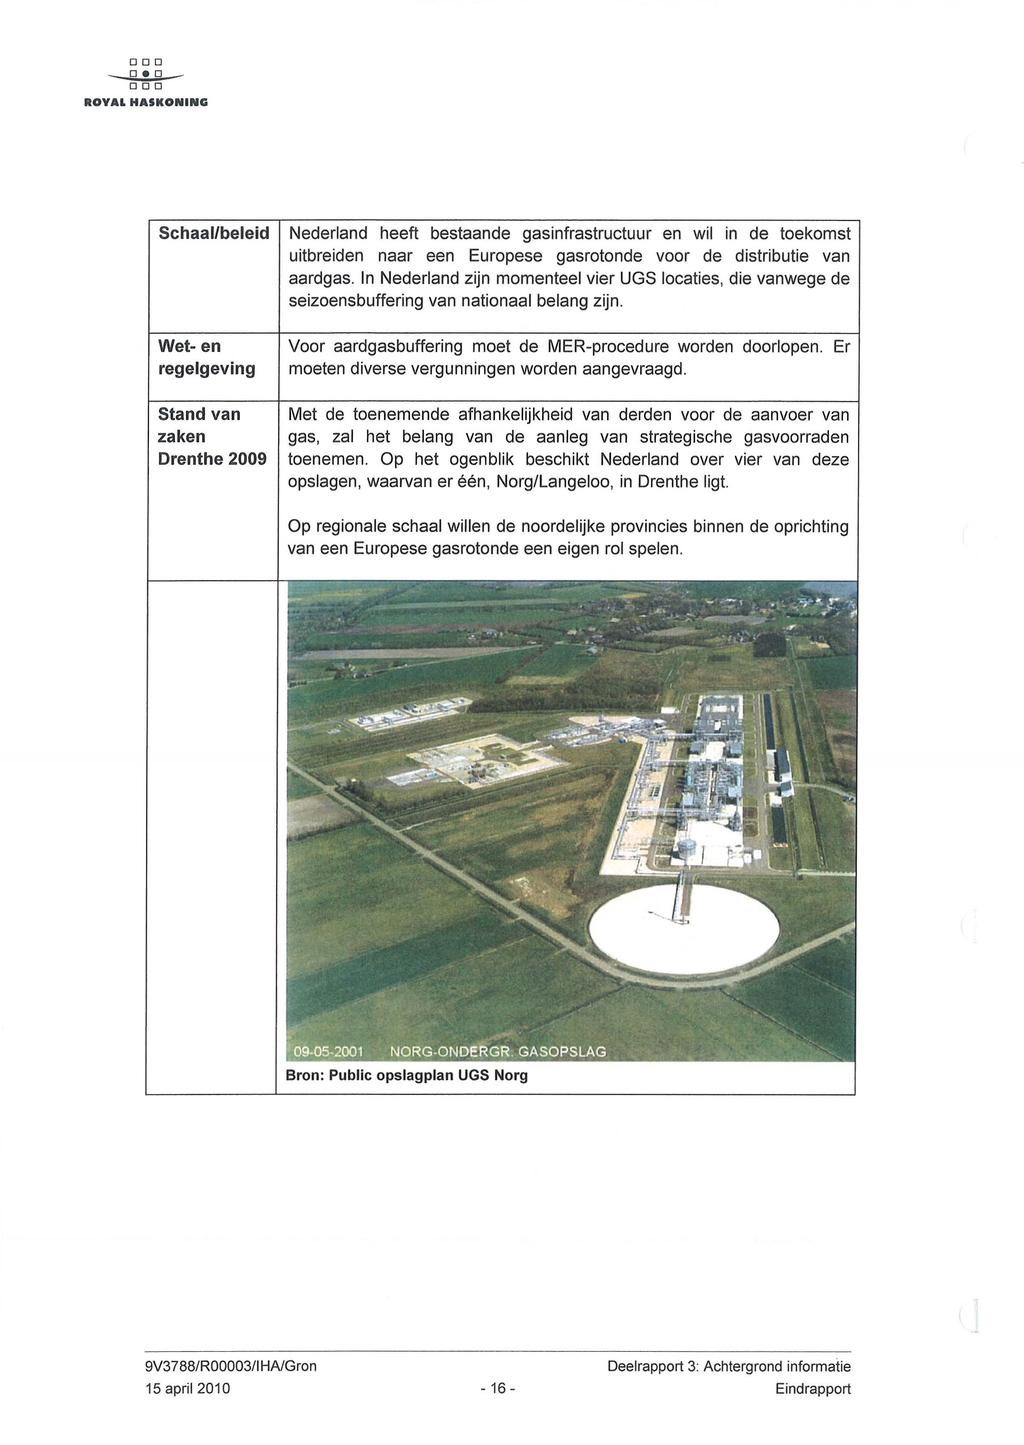 DOD 0.0 DOD Schaal/beleid Wet- en regelgeving Nederland heeft bestaande gasinfrastructuur en wil in de toekomst uitbreiden naar een Europese gasrotonde voor de distributie van aardgas.